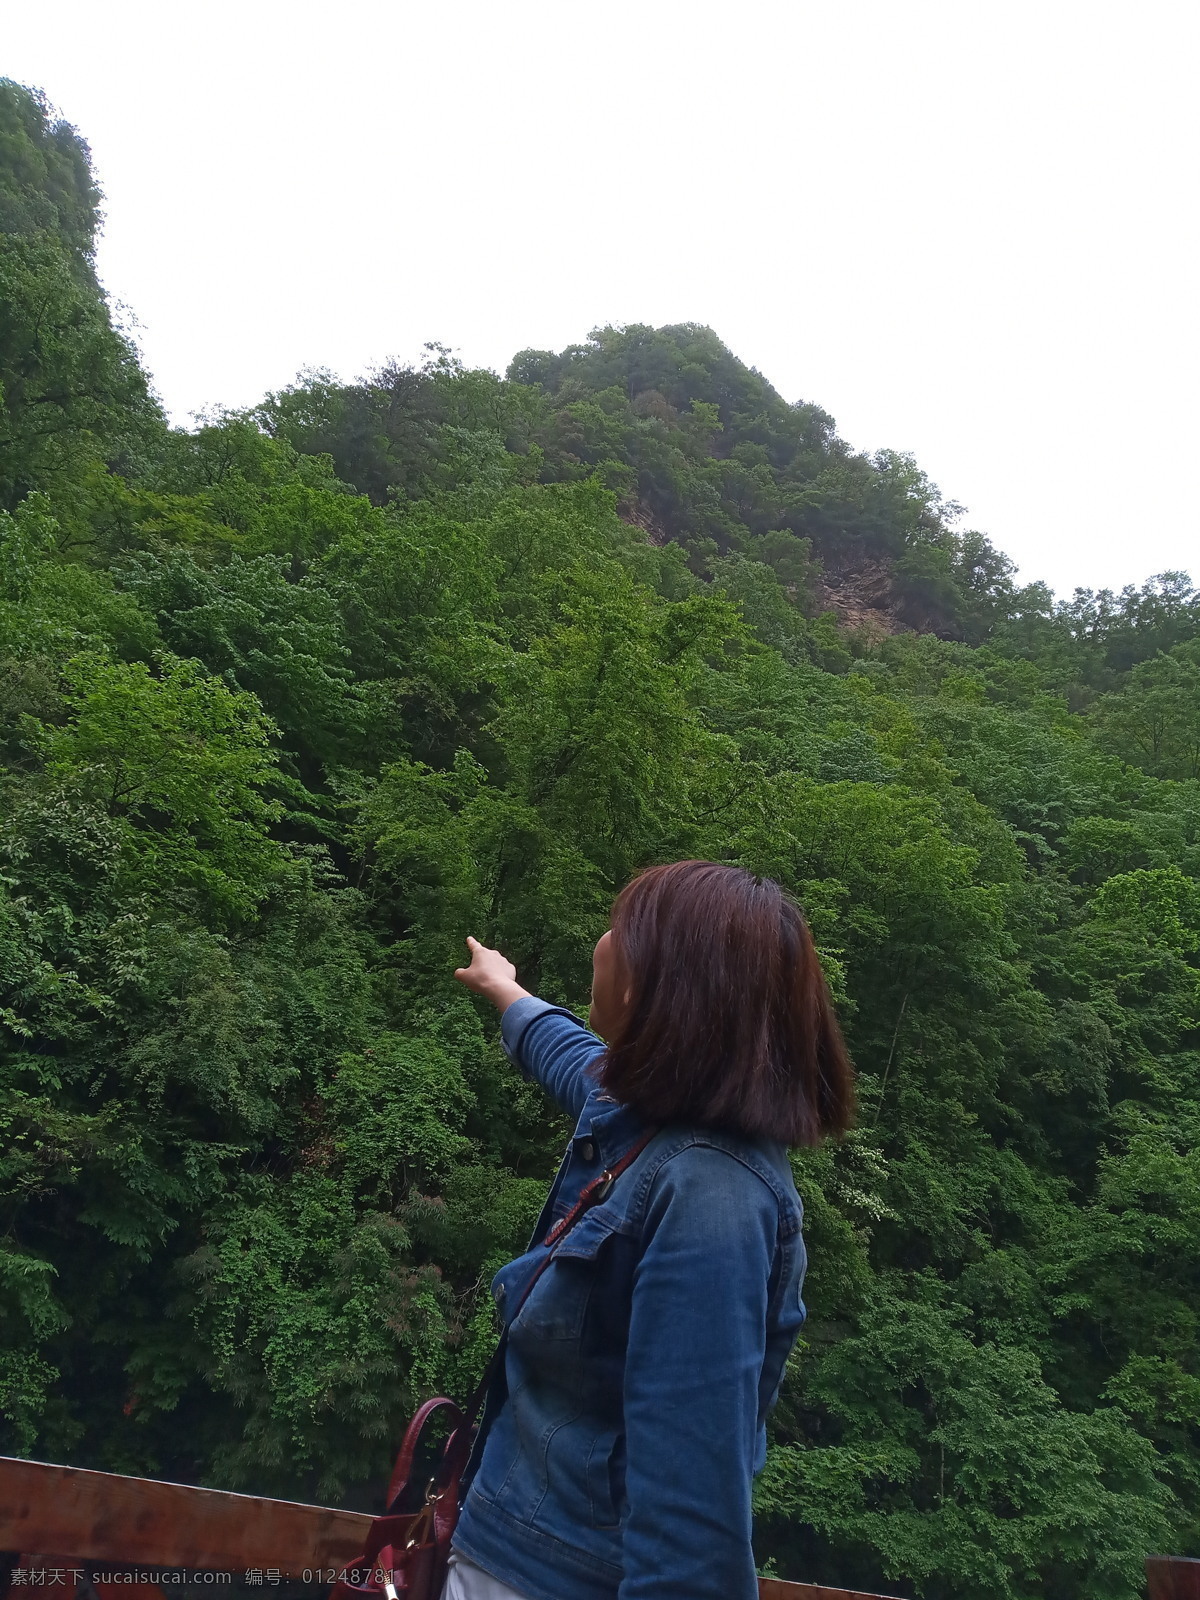 青山绿水 汉中 黎平森林公园 山 奇石 摄影作品 自然景观 山水风景